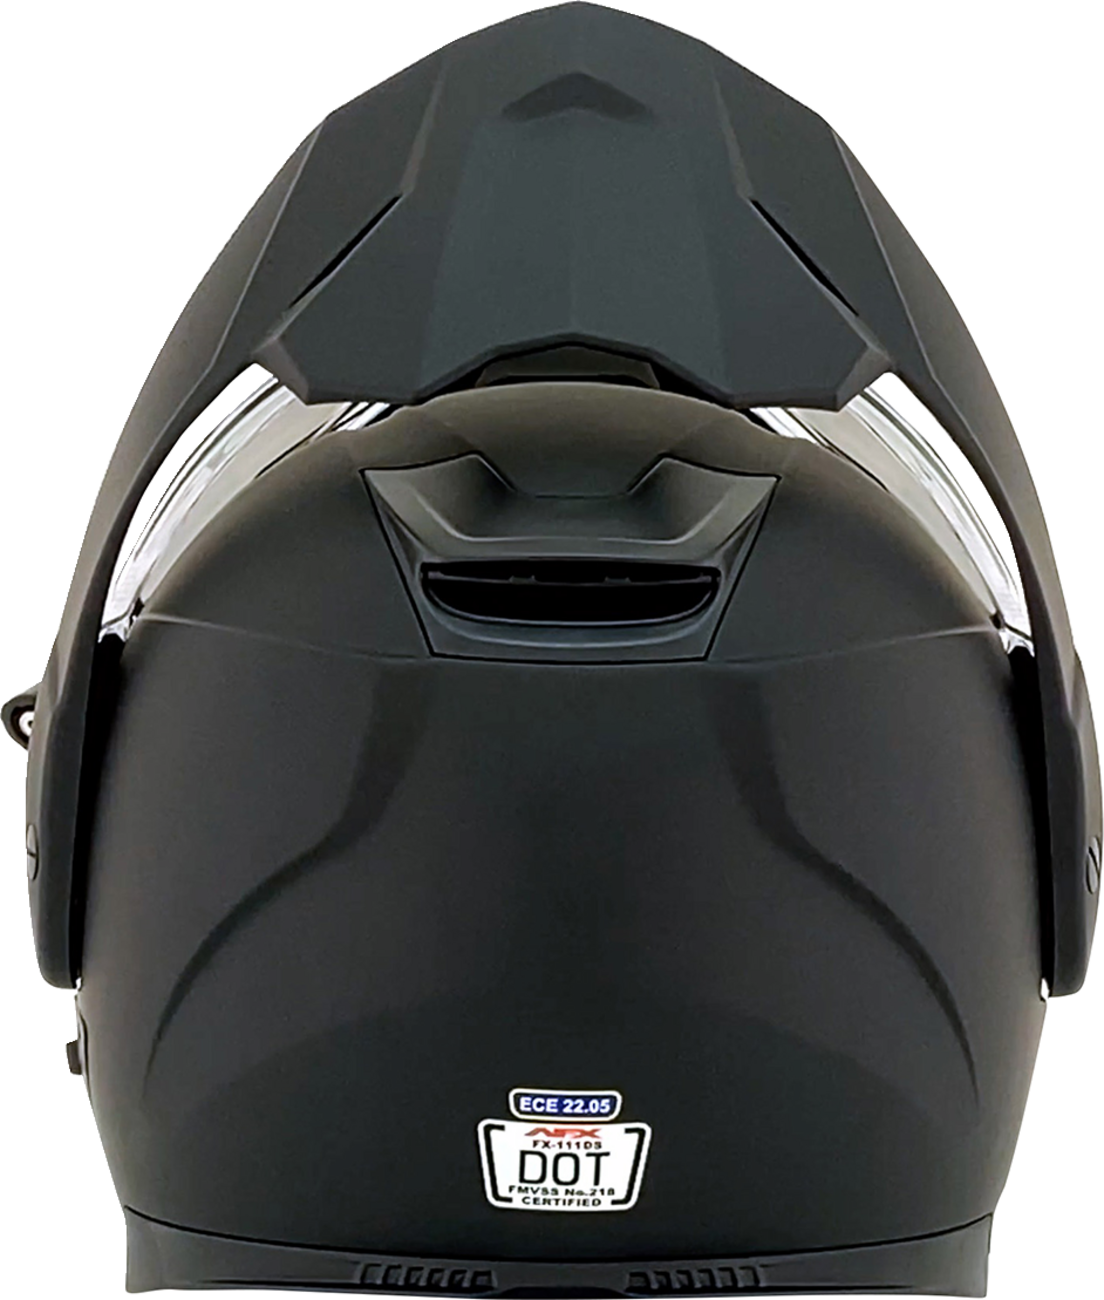 AFX FX-111DS Snow Helmet - Electric - Matte Black - XS 0120-0798